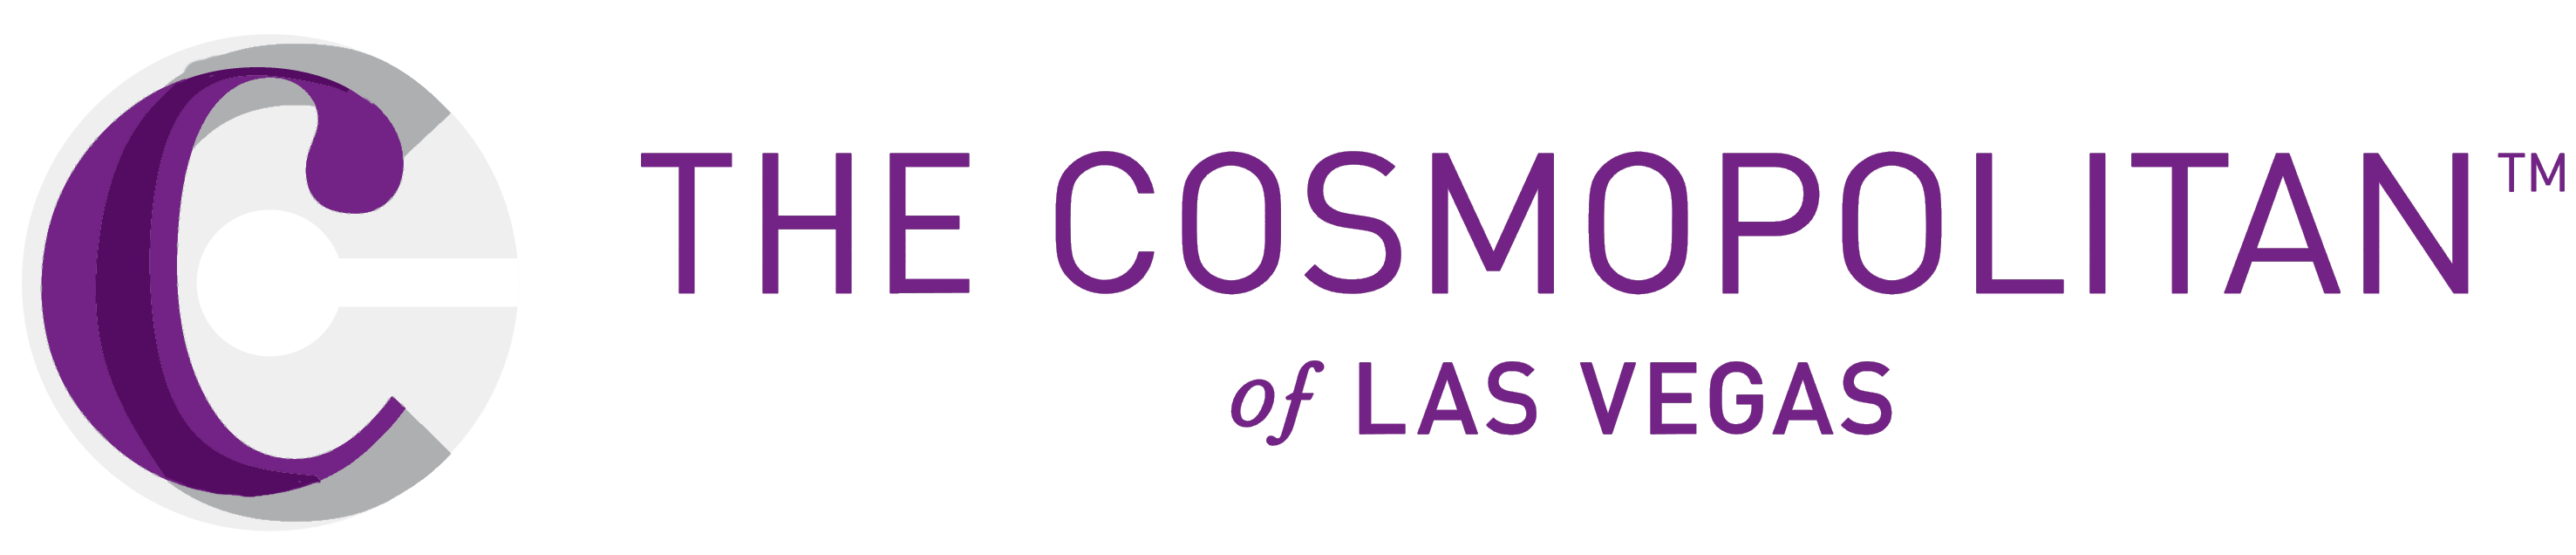 https://brandoutlook.com/wp-content/uploads/2019/06/Cosmopolitan_Las_Vegas_logo.png